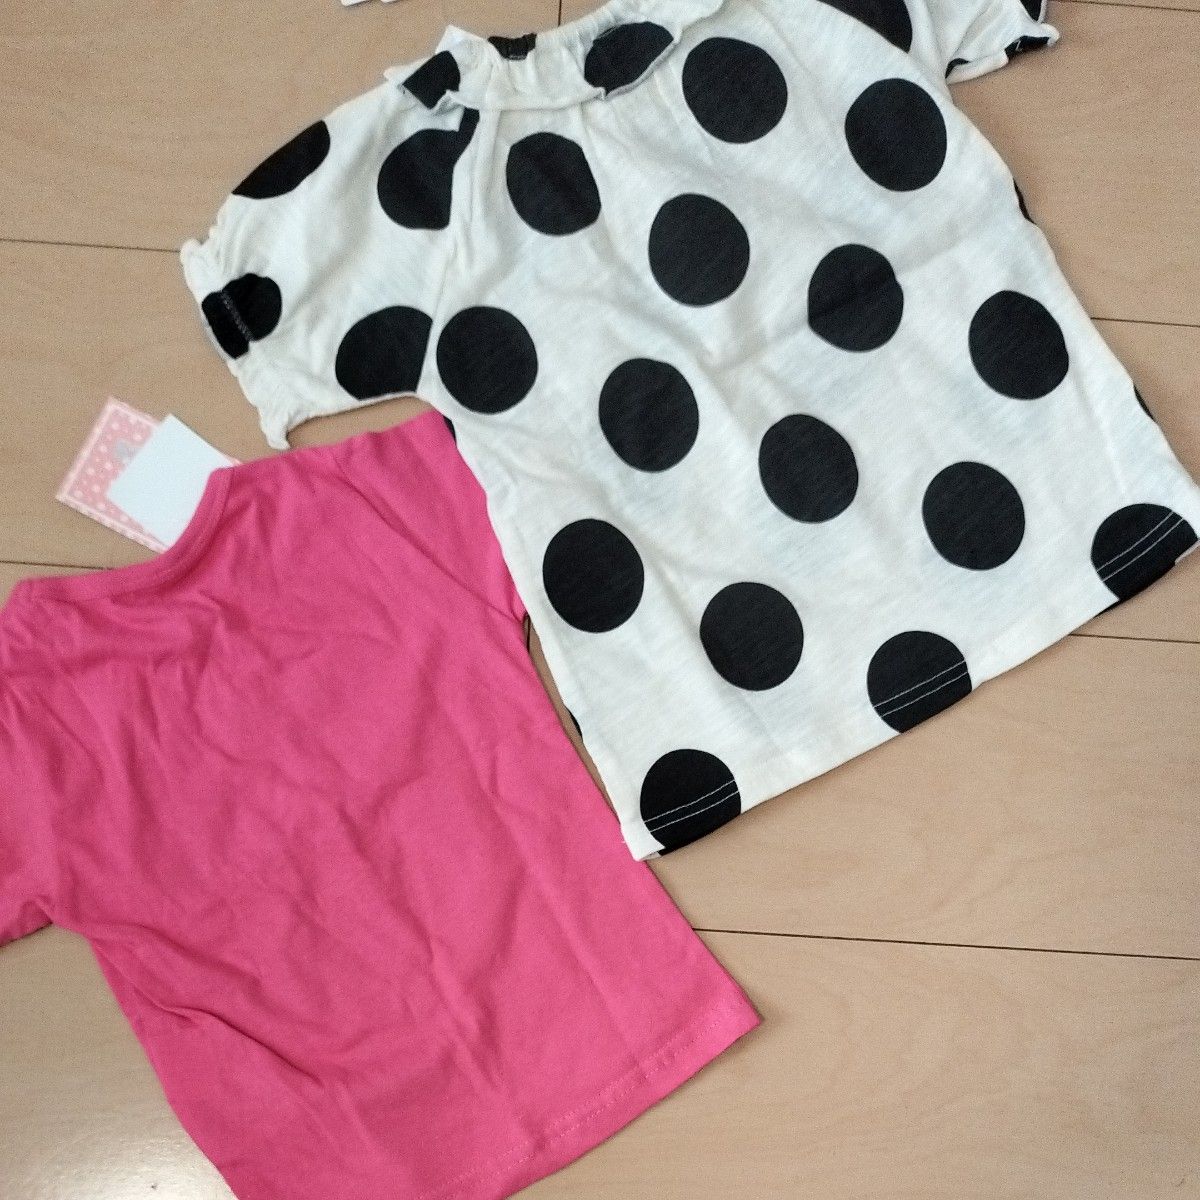 タグ付き・半袖Tシャツ・ こども服・ 女の子・ ピンク・うさぎ80cm・ドット柄90cm・綿100%